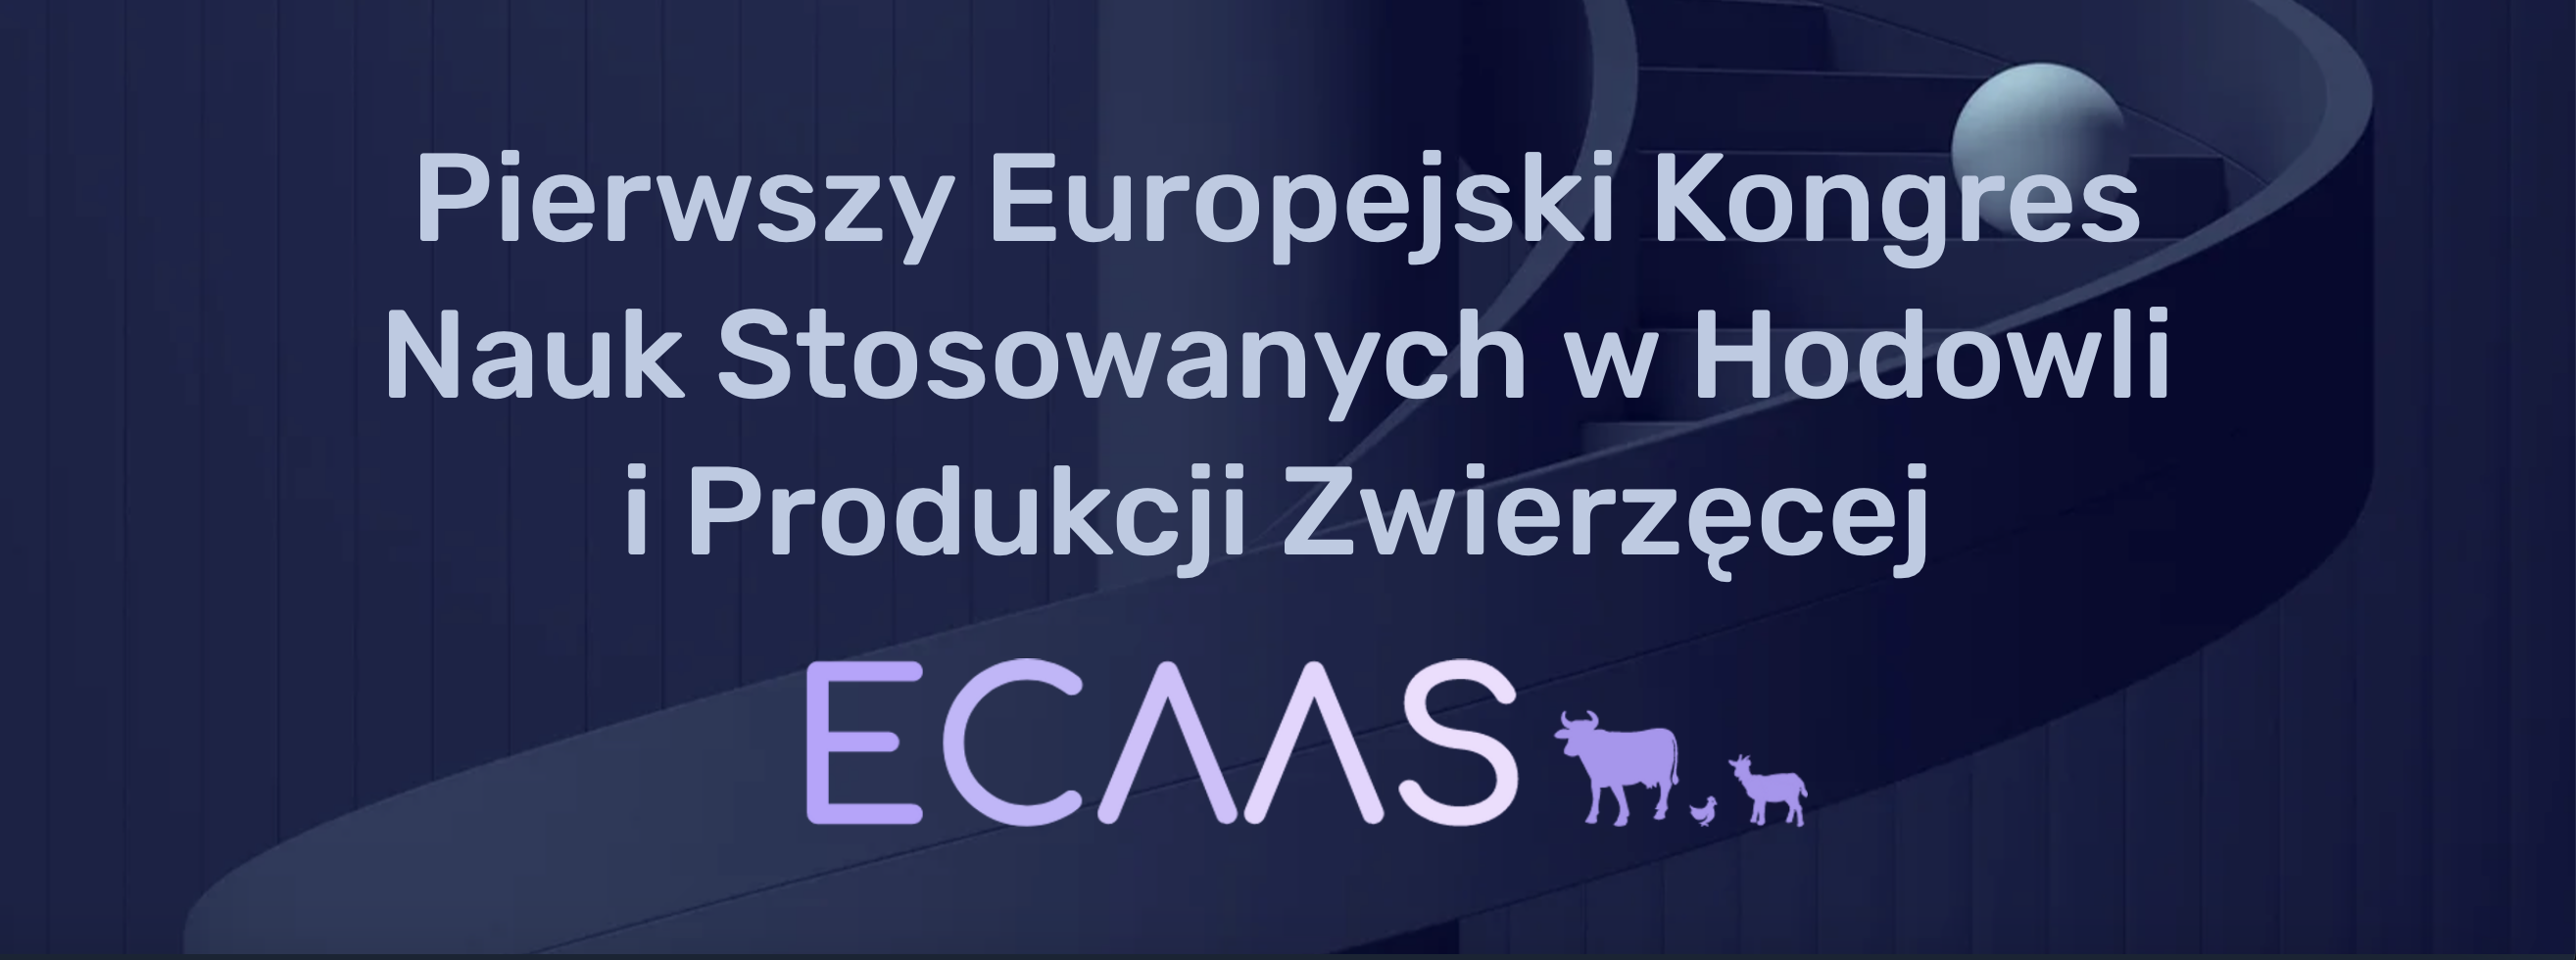 Pierwszy Europejski Kongres Nauk Stosowanych w Hodowli i Produkcji Zwierzęcej ECAAS